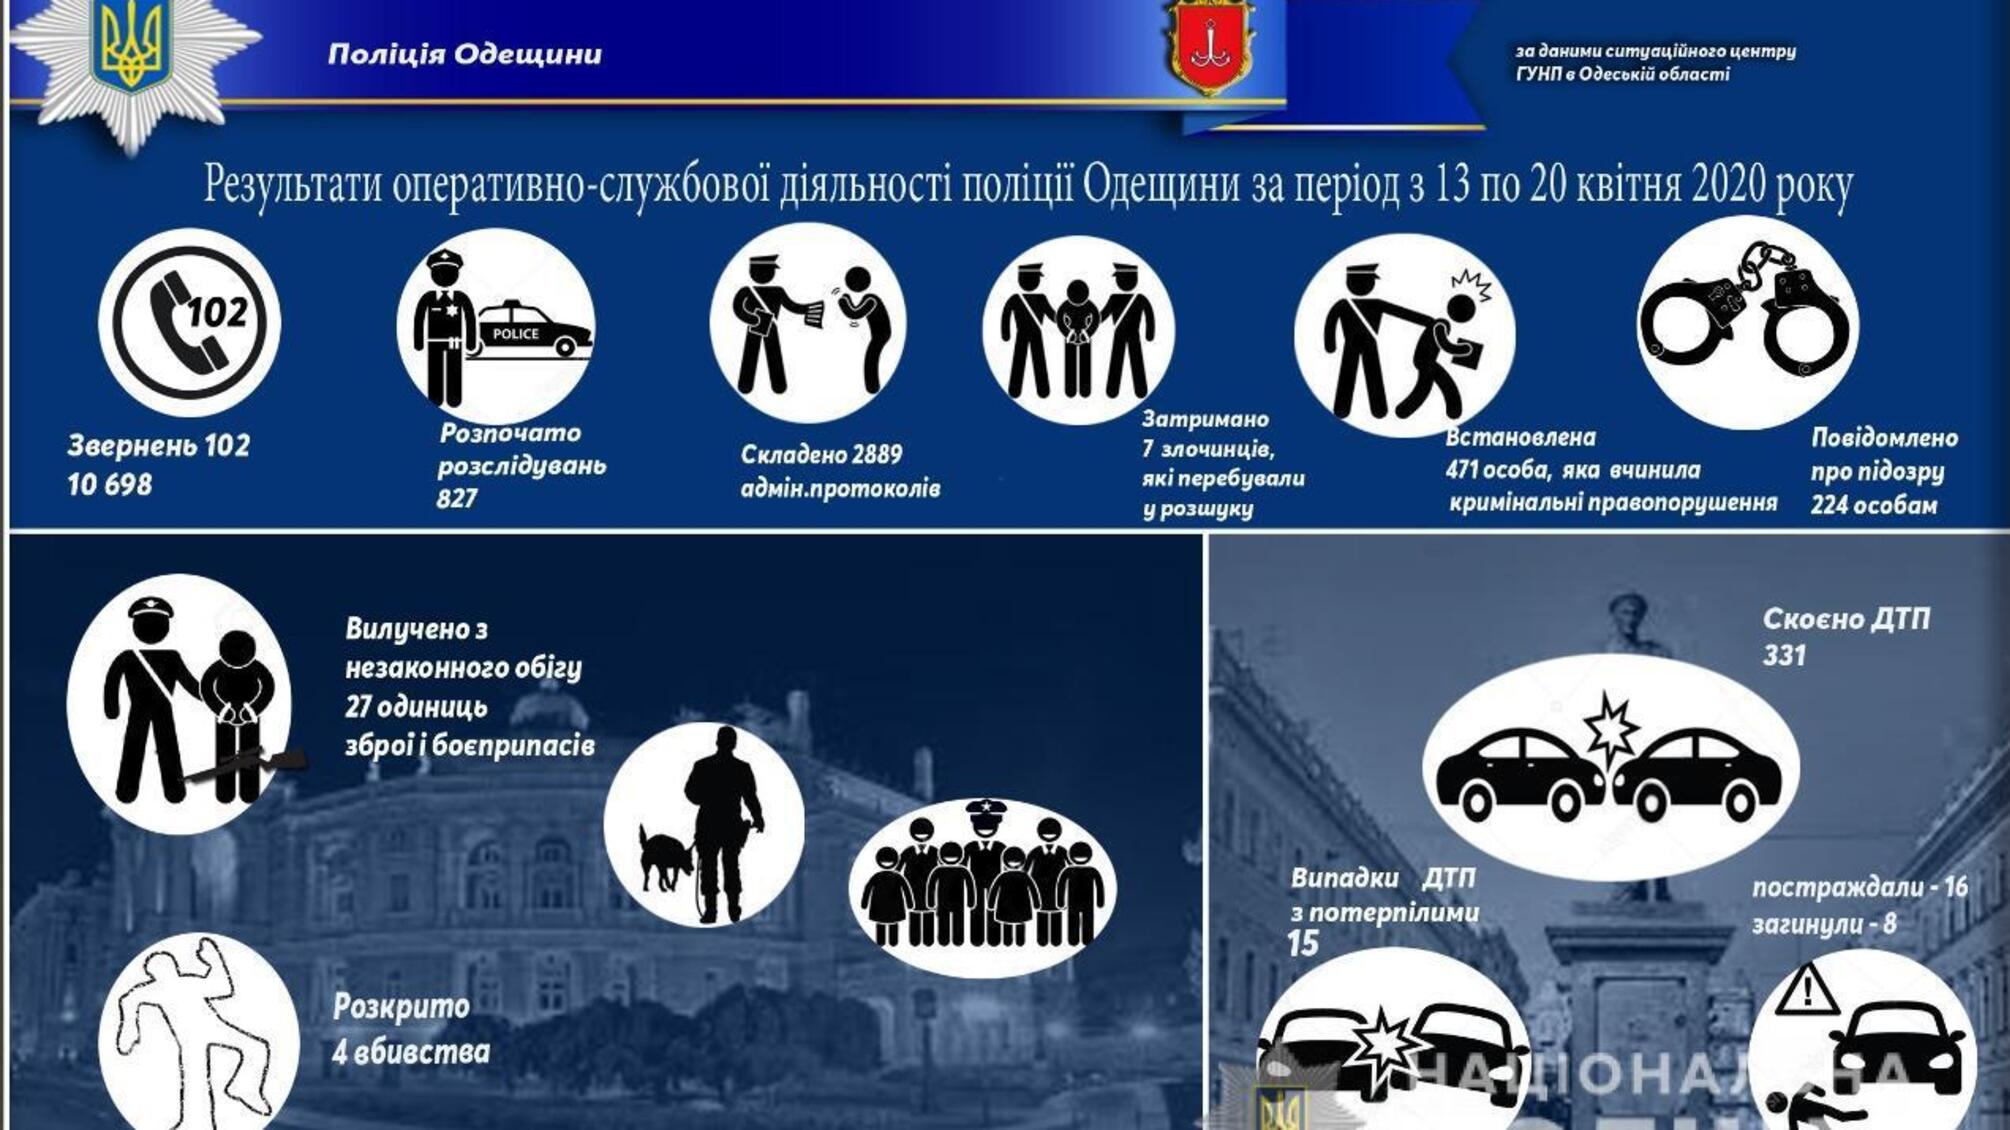 Результати оперативно-службової діяльності поліції Одещини за період з 13 по 20 квітня 2020 року